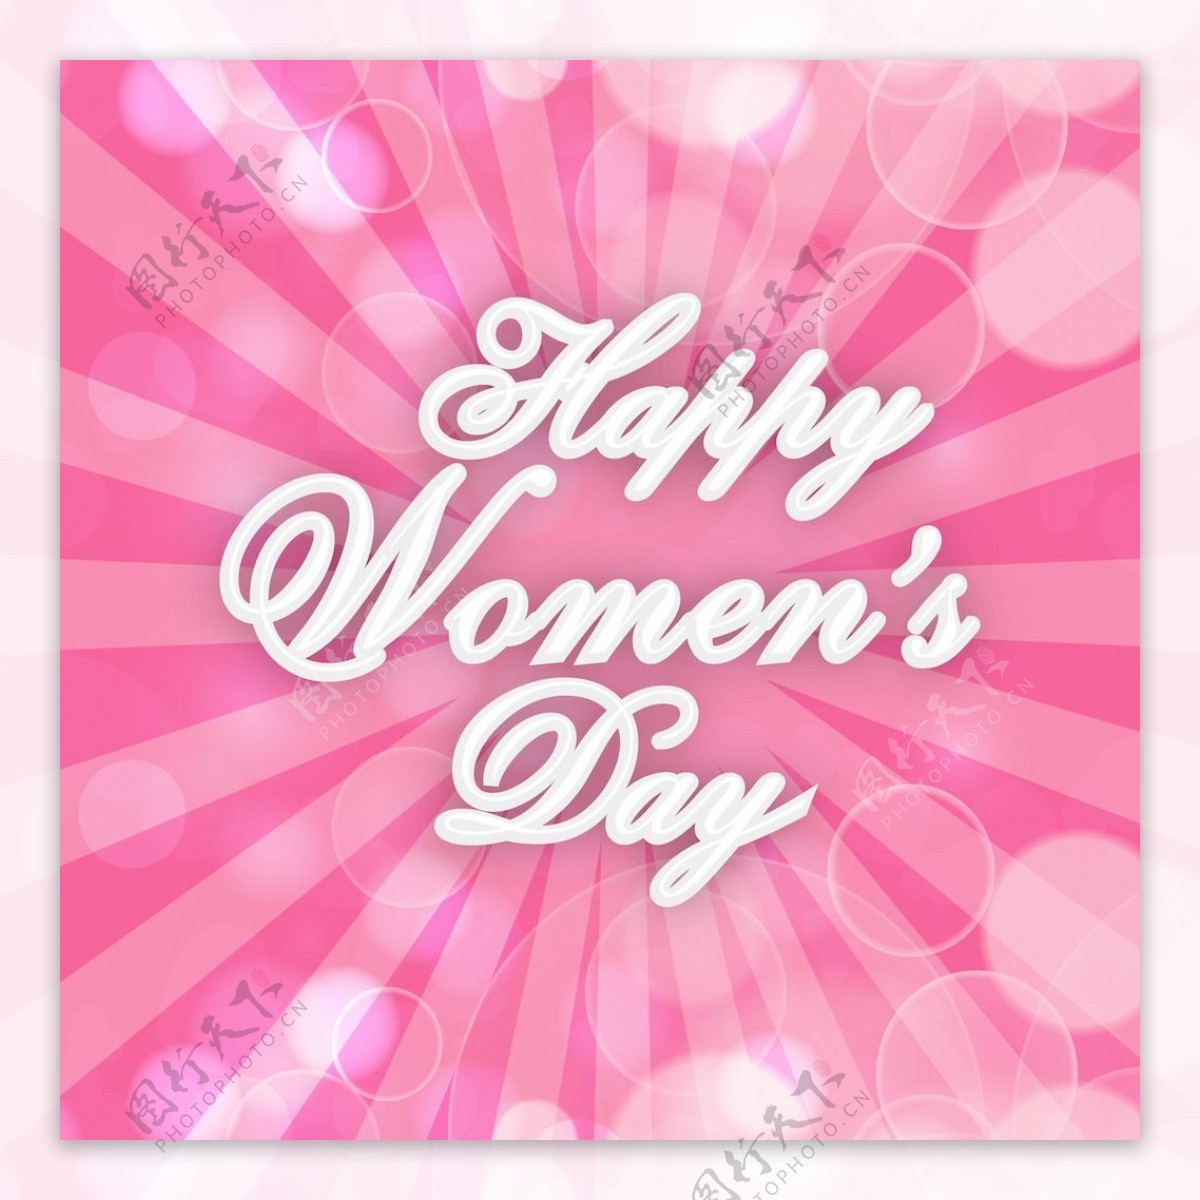 三八妇女节贺卡或海报上闪亮的粉红色射线背景时尚设计文本